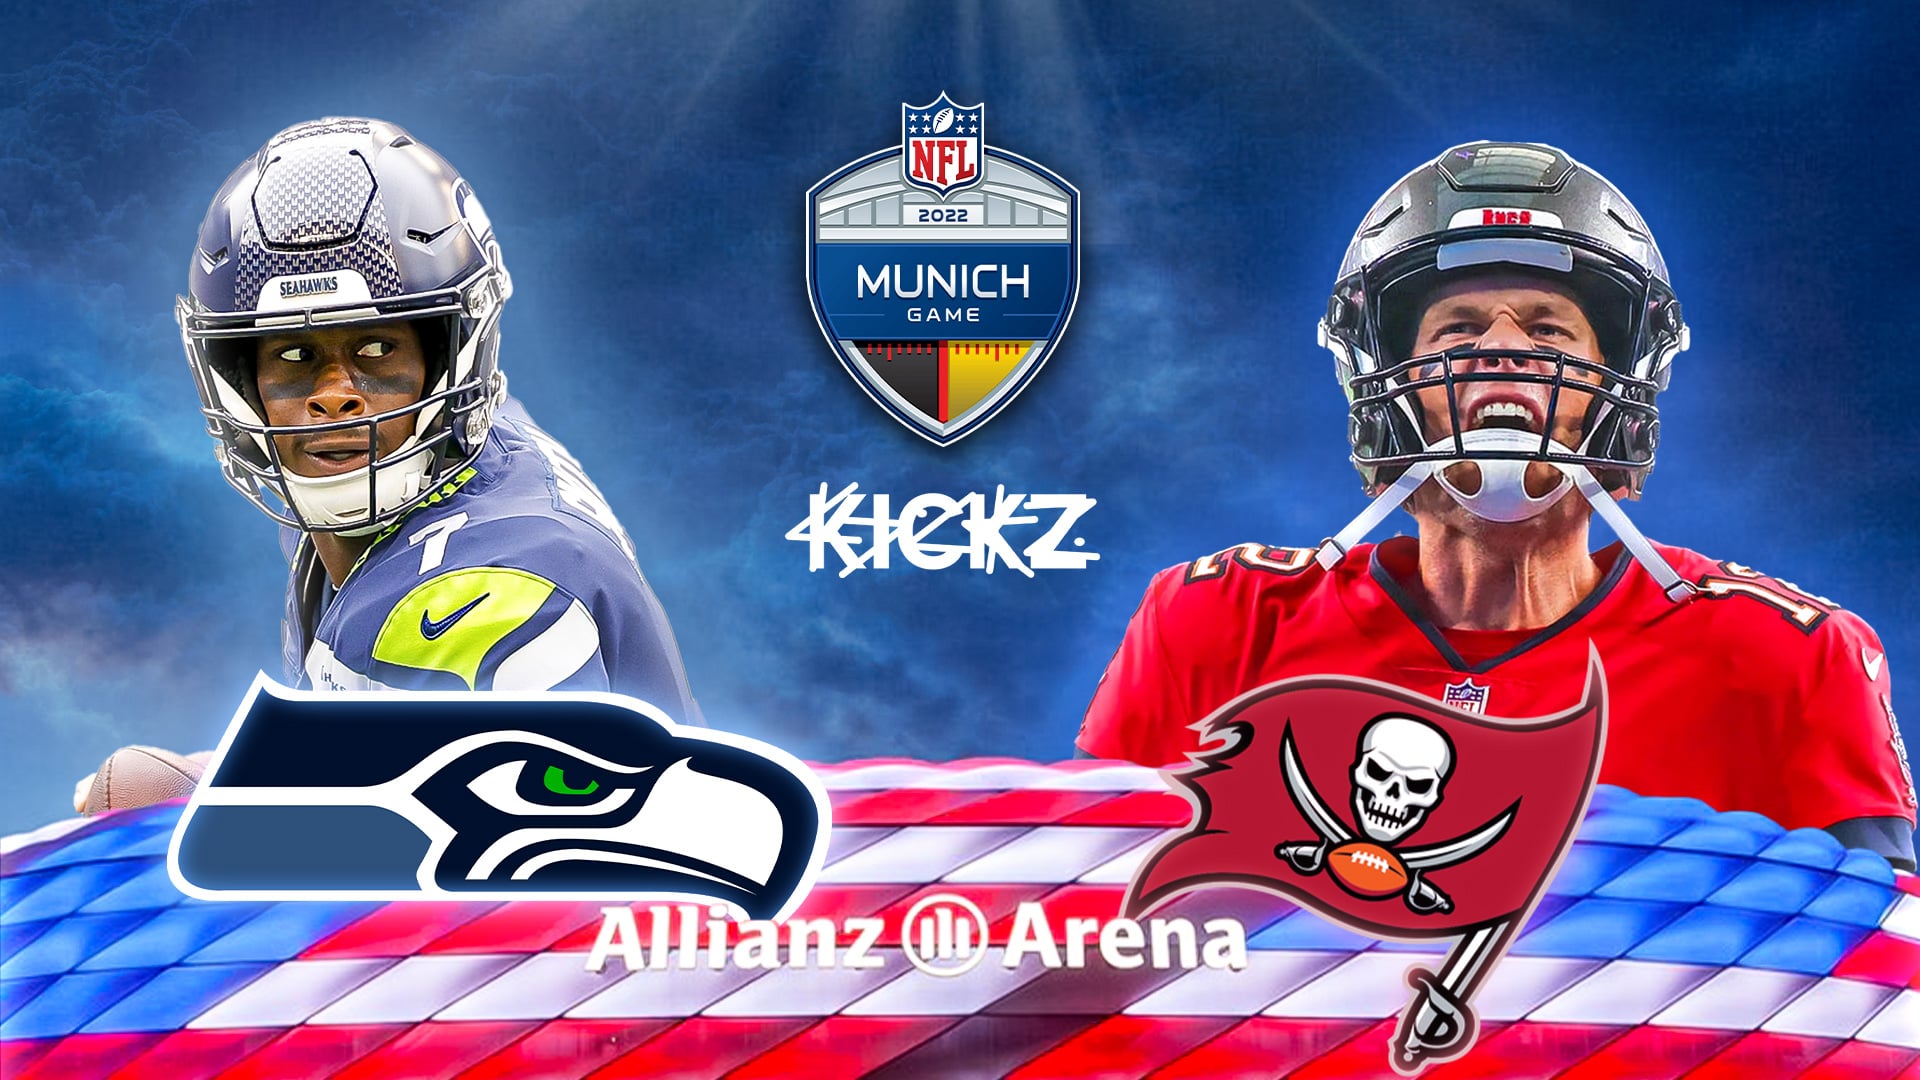 NFL Munich Game X KICKZ (w/ Tom Brady & Geno Smith)